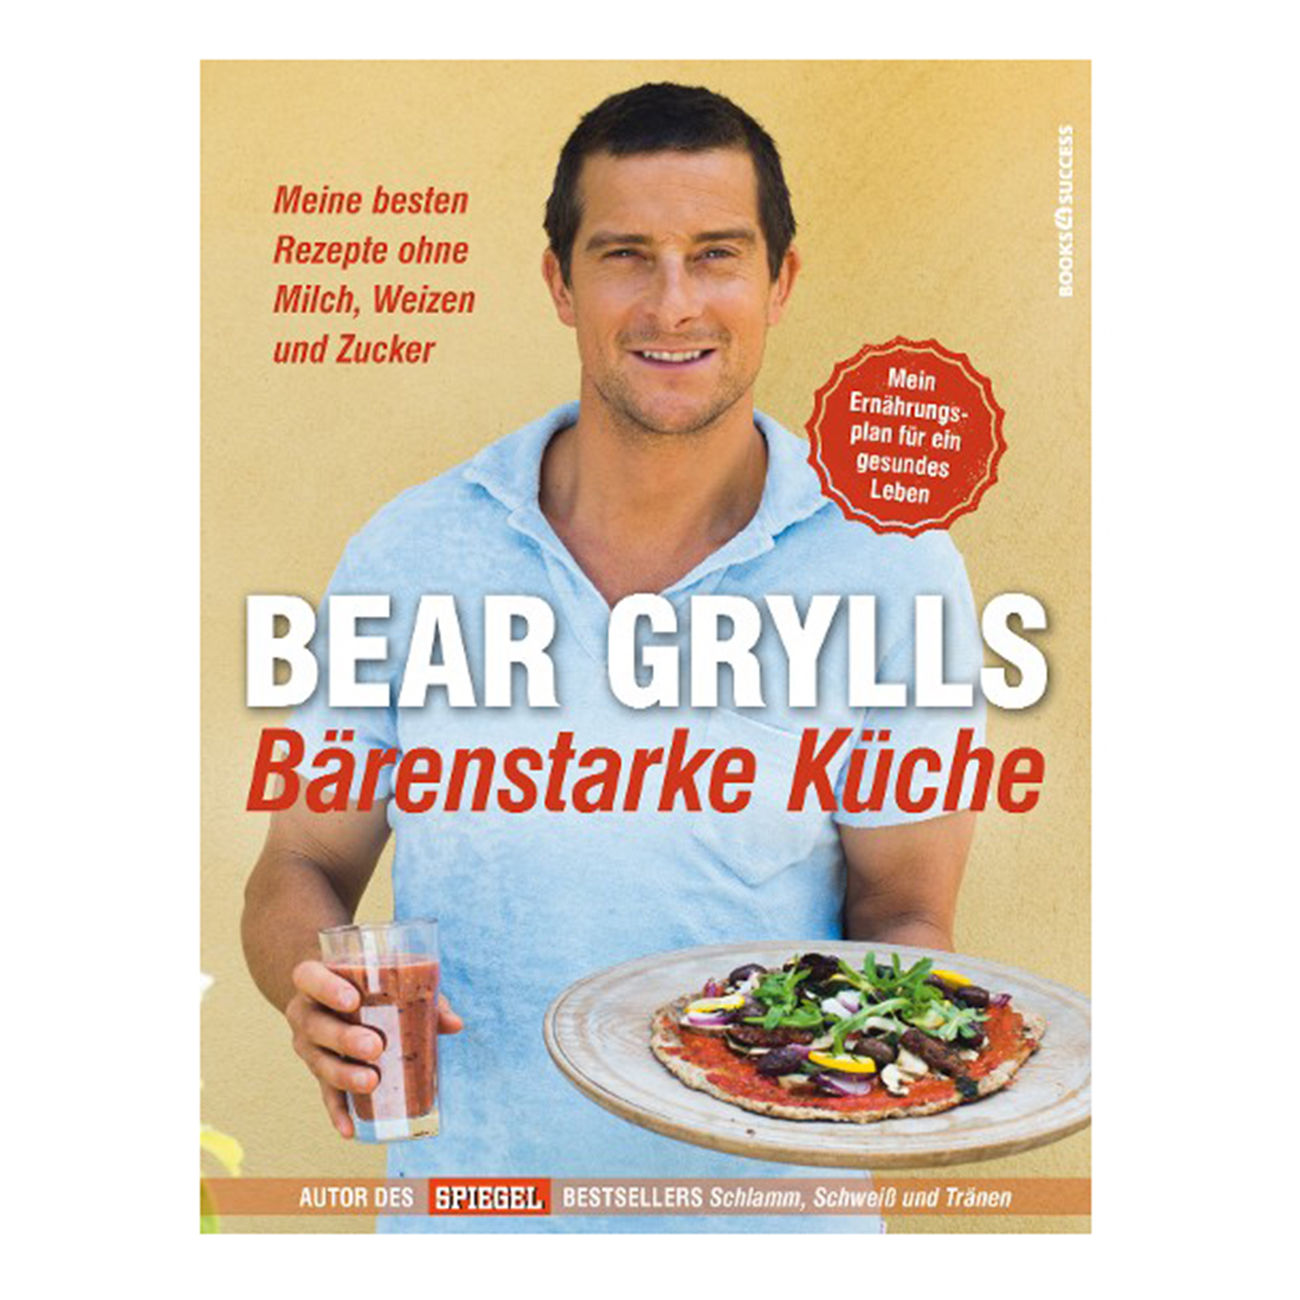 Buch Bear Grylls Brenstarke Kche (gebraucht - sehr gut)